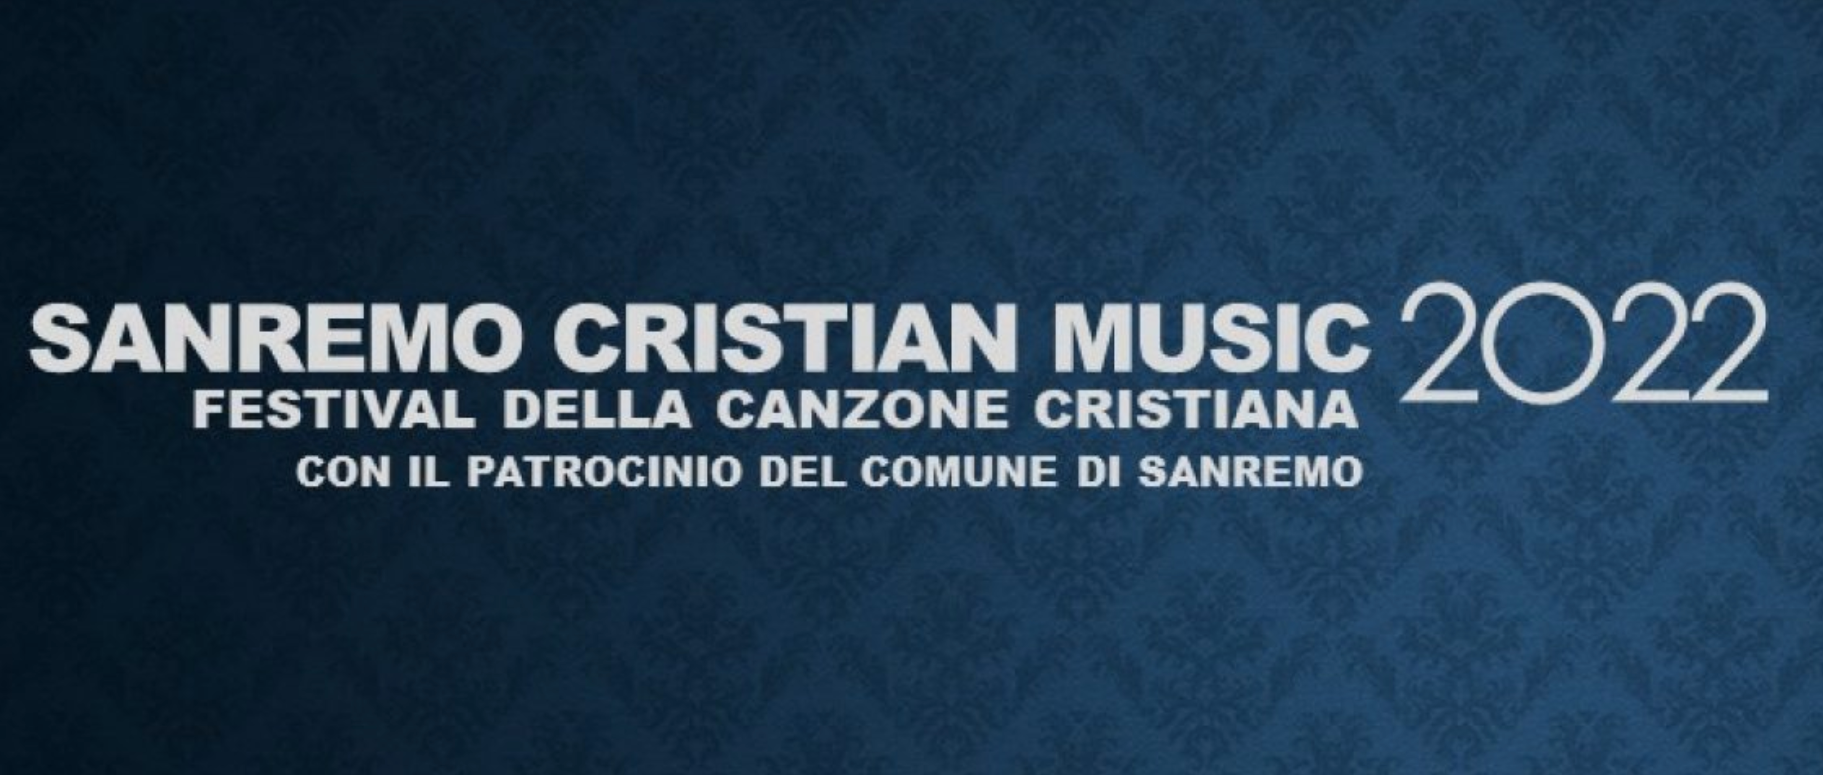 La première édition du Festival de musique chrétienne aura lieu en février 2022 | capture d'écran sanremofestivaldellacanzonecristiana.it